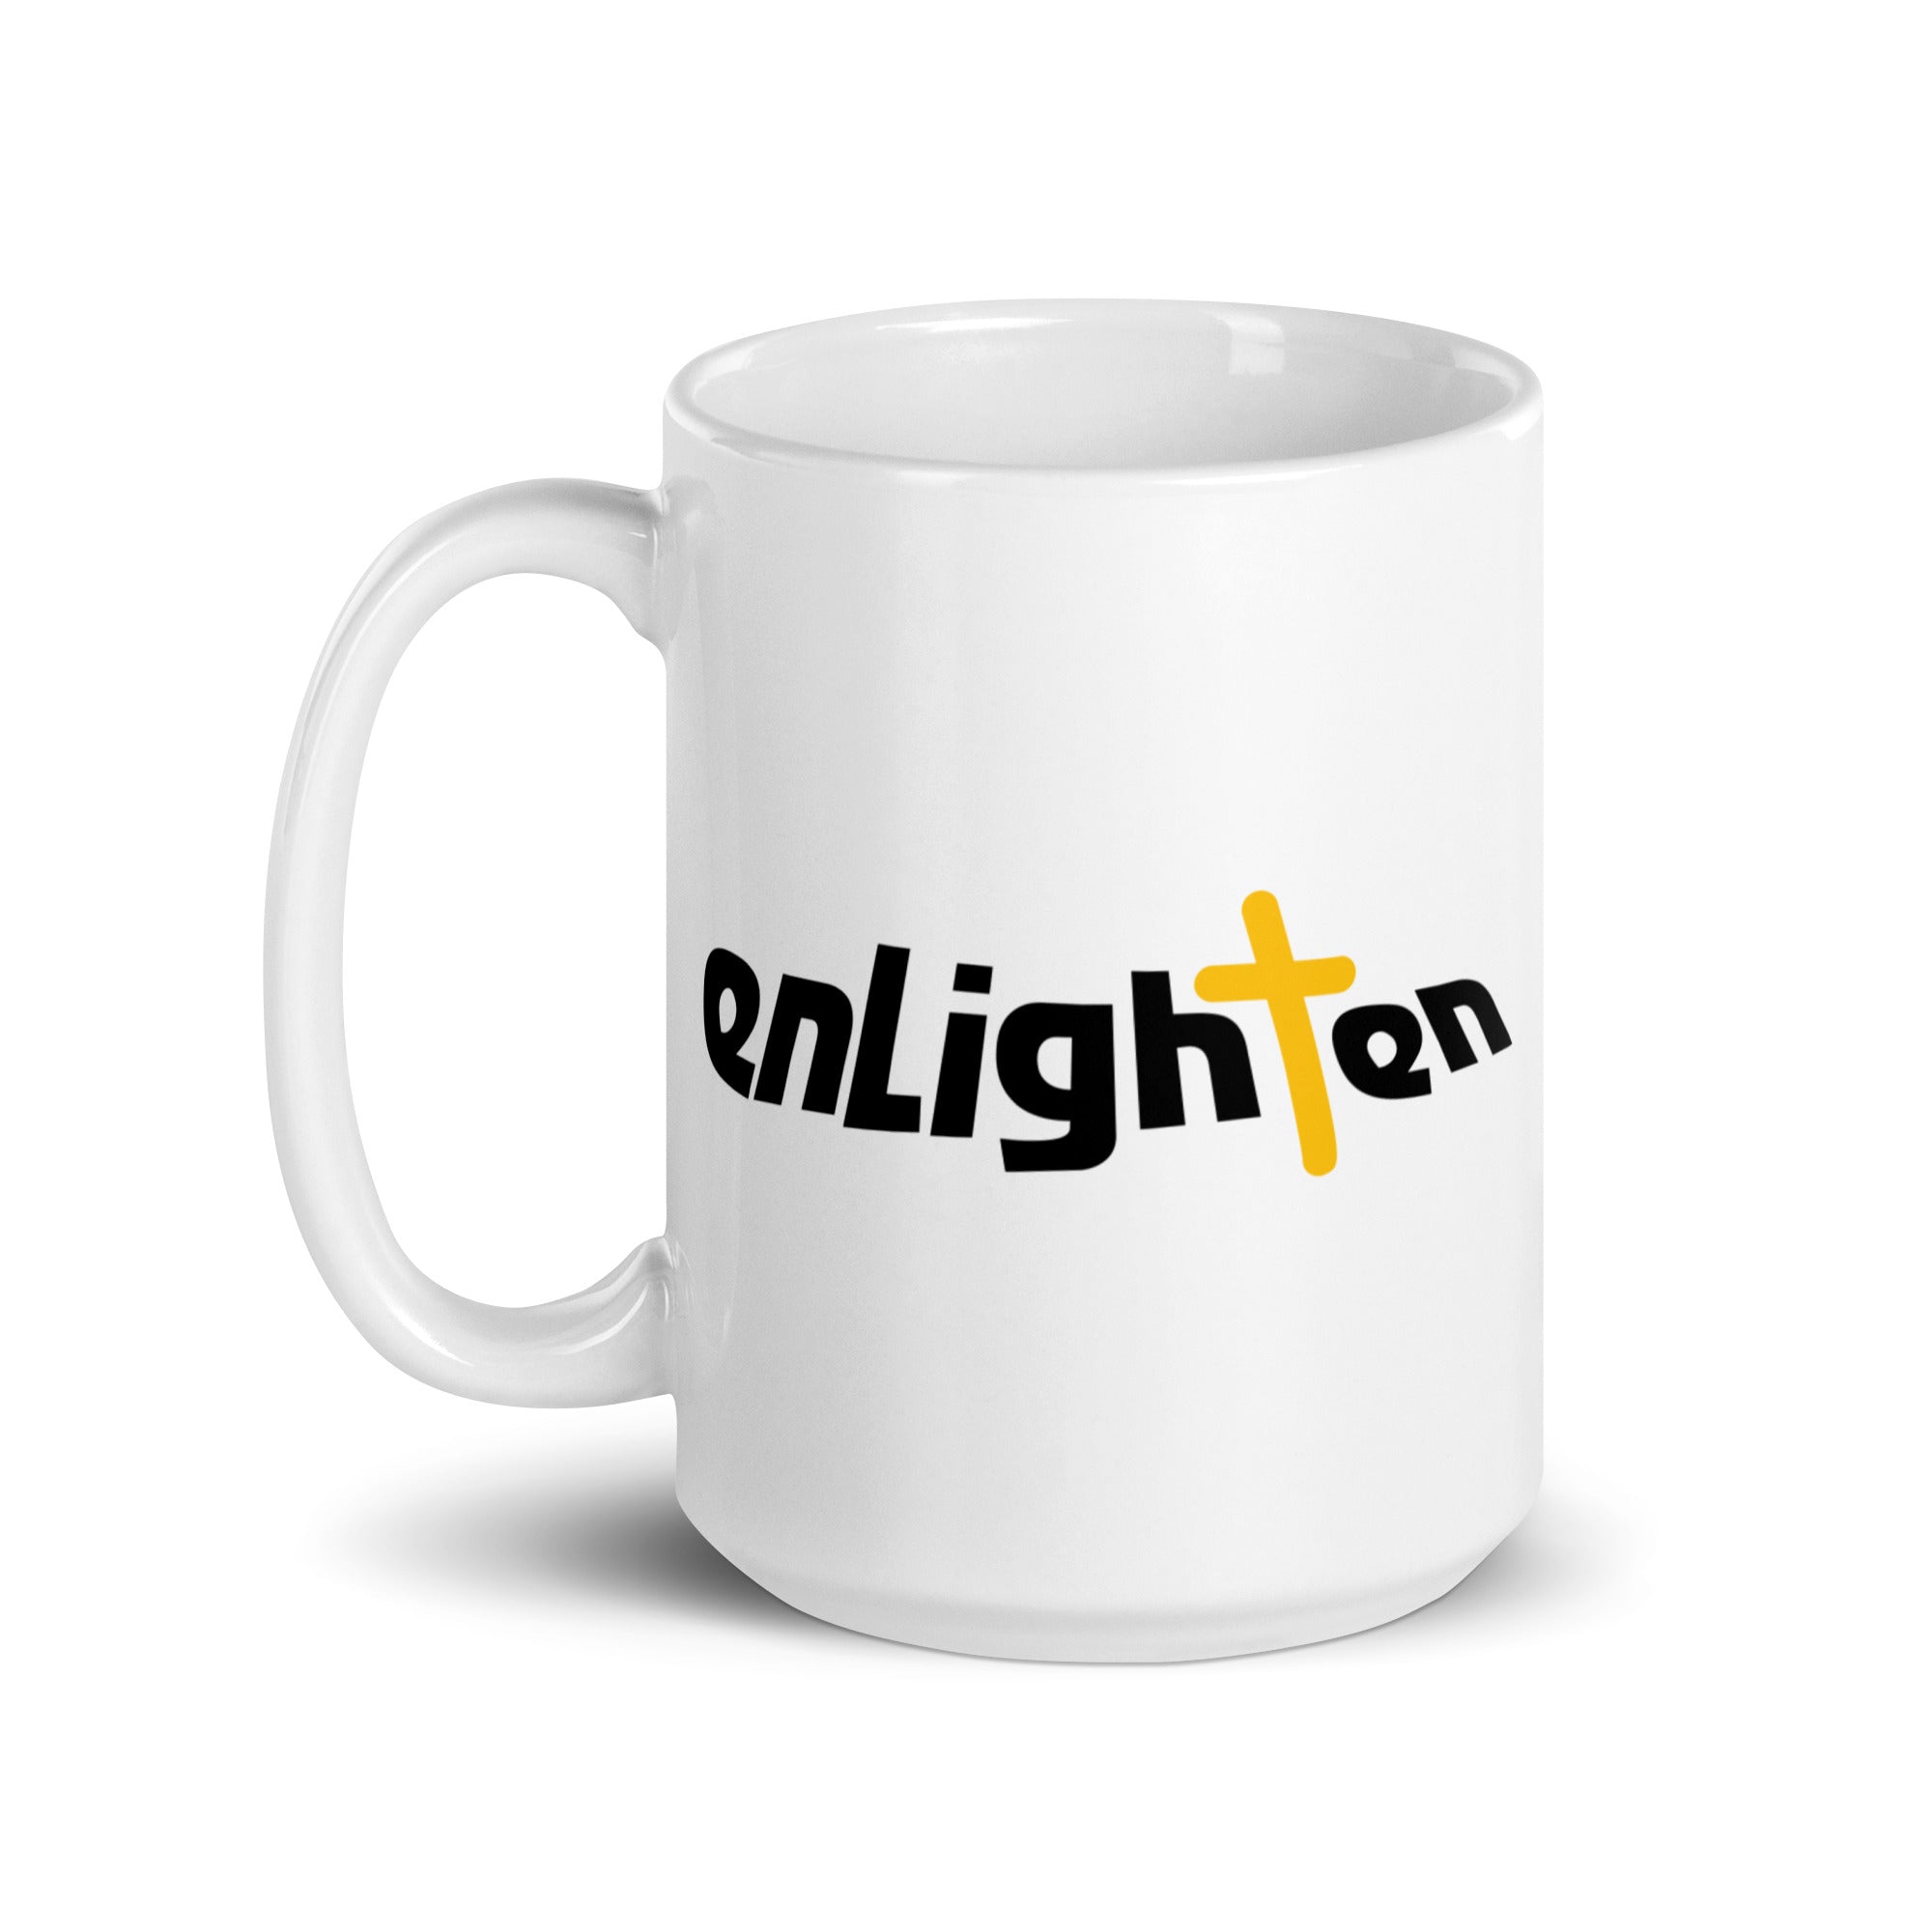 Enlighten: Mug